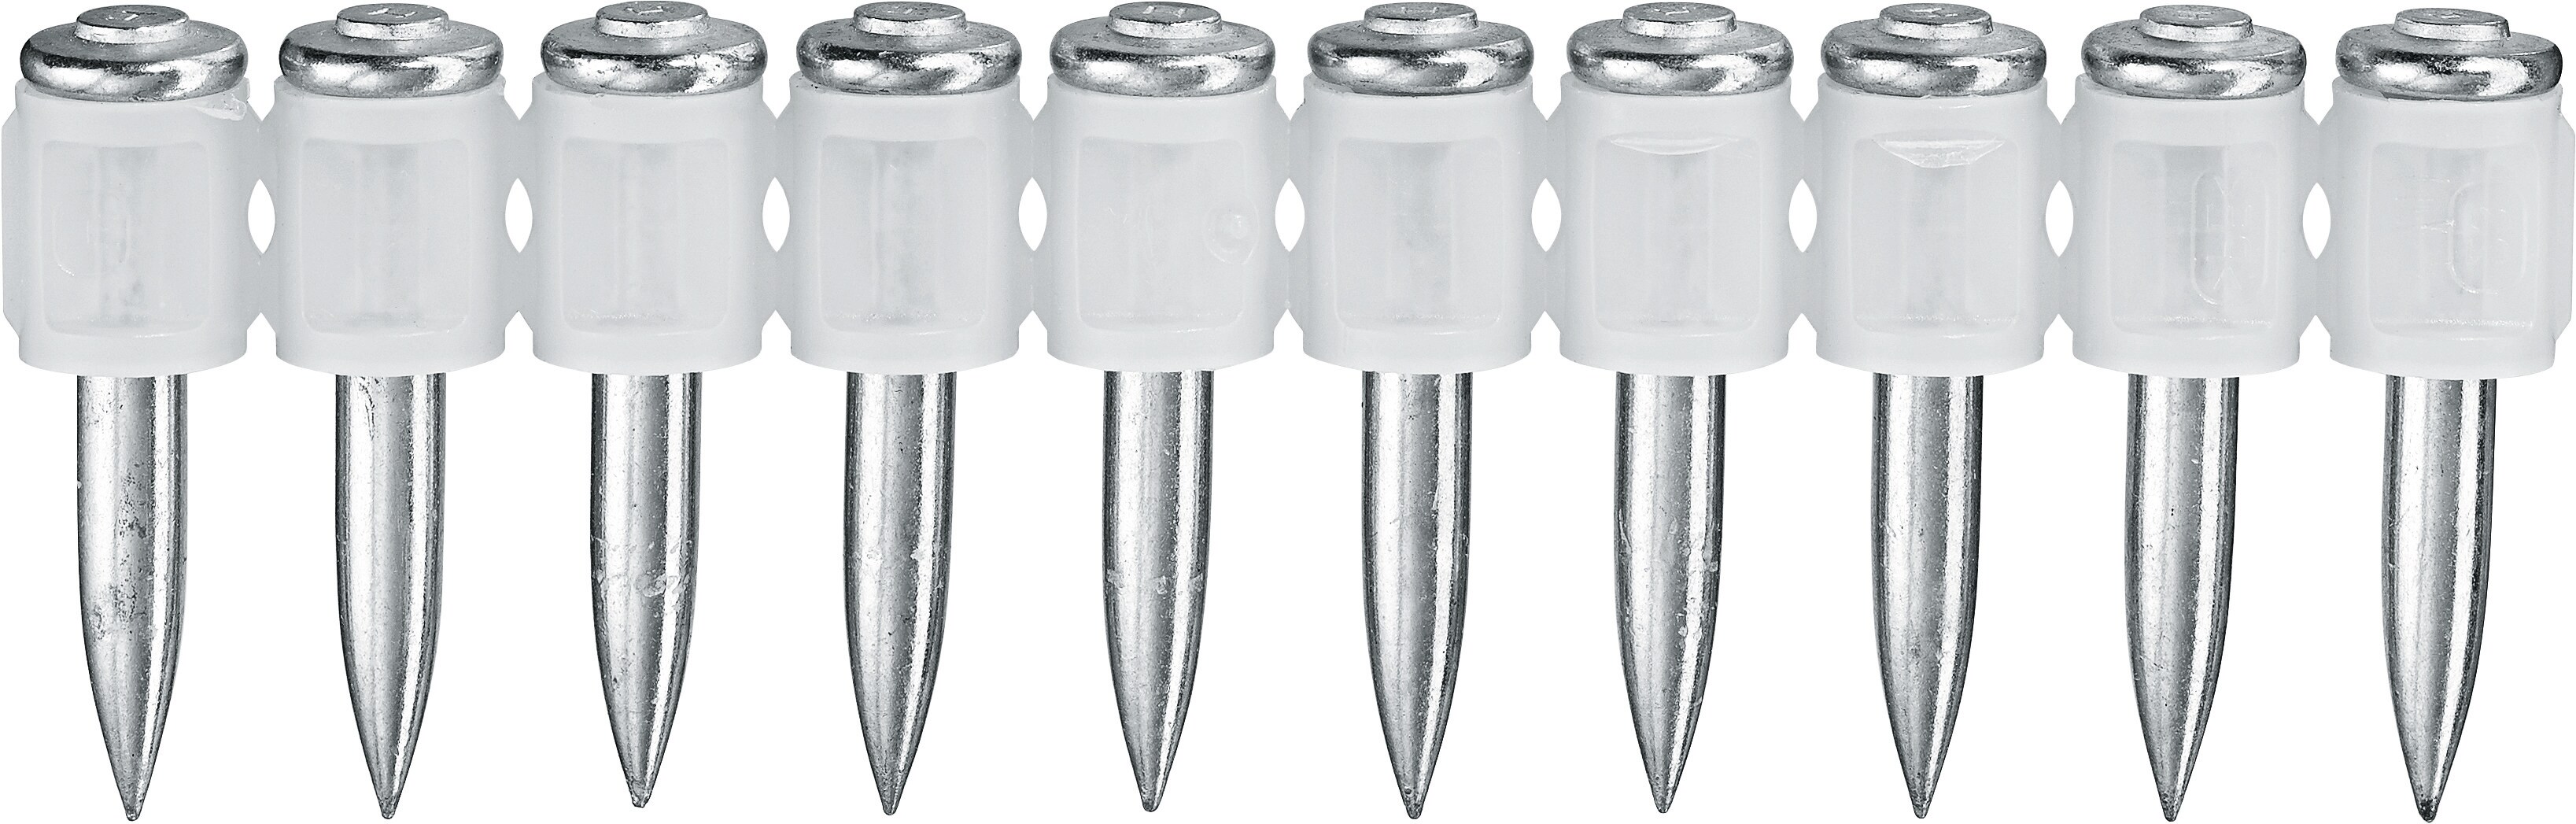 Hilti X-P MX krachtige nagels voor premium hechtingsgraad aan beton